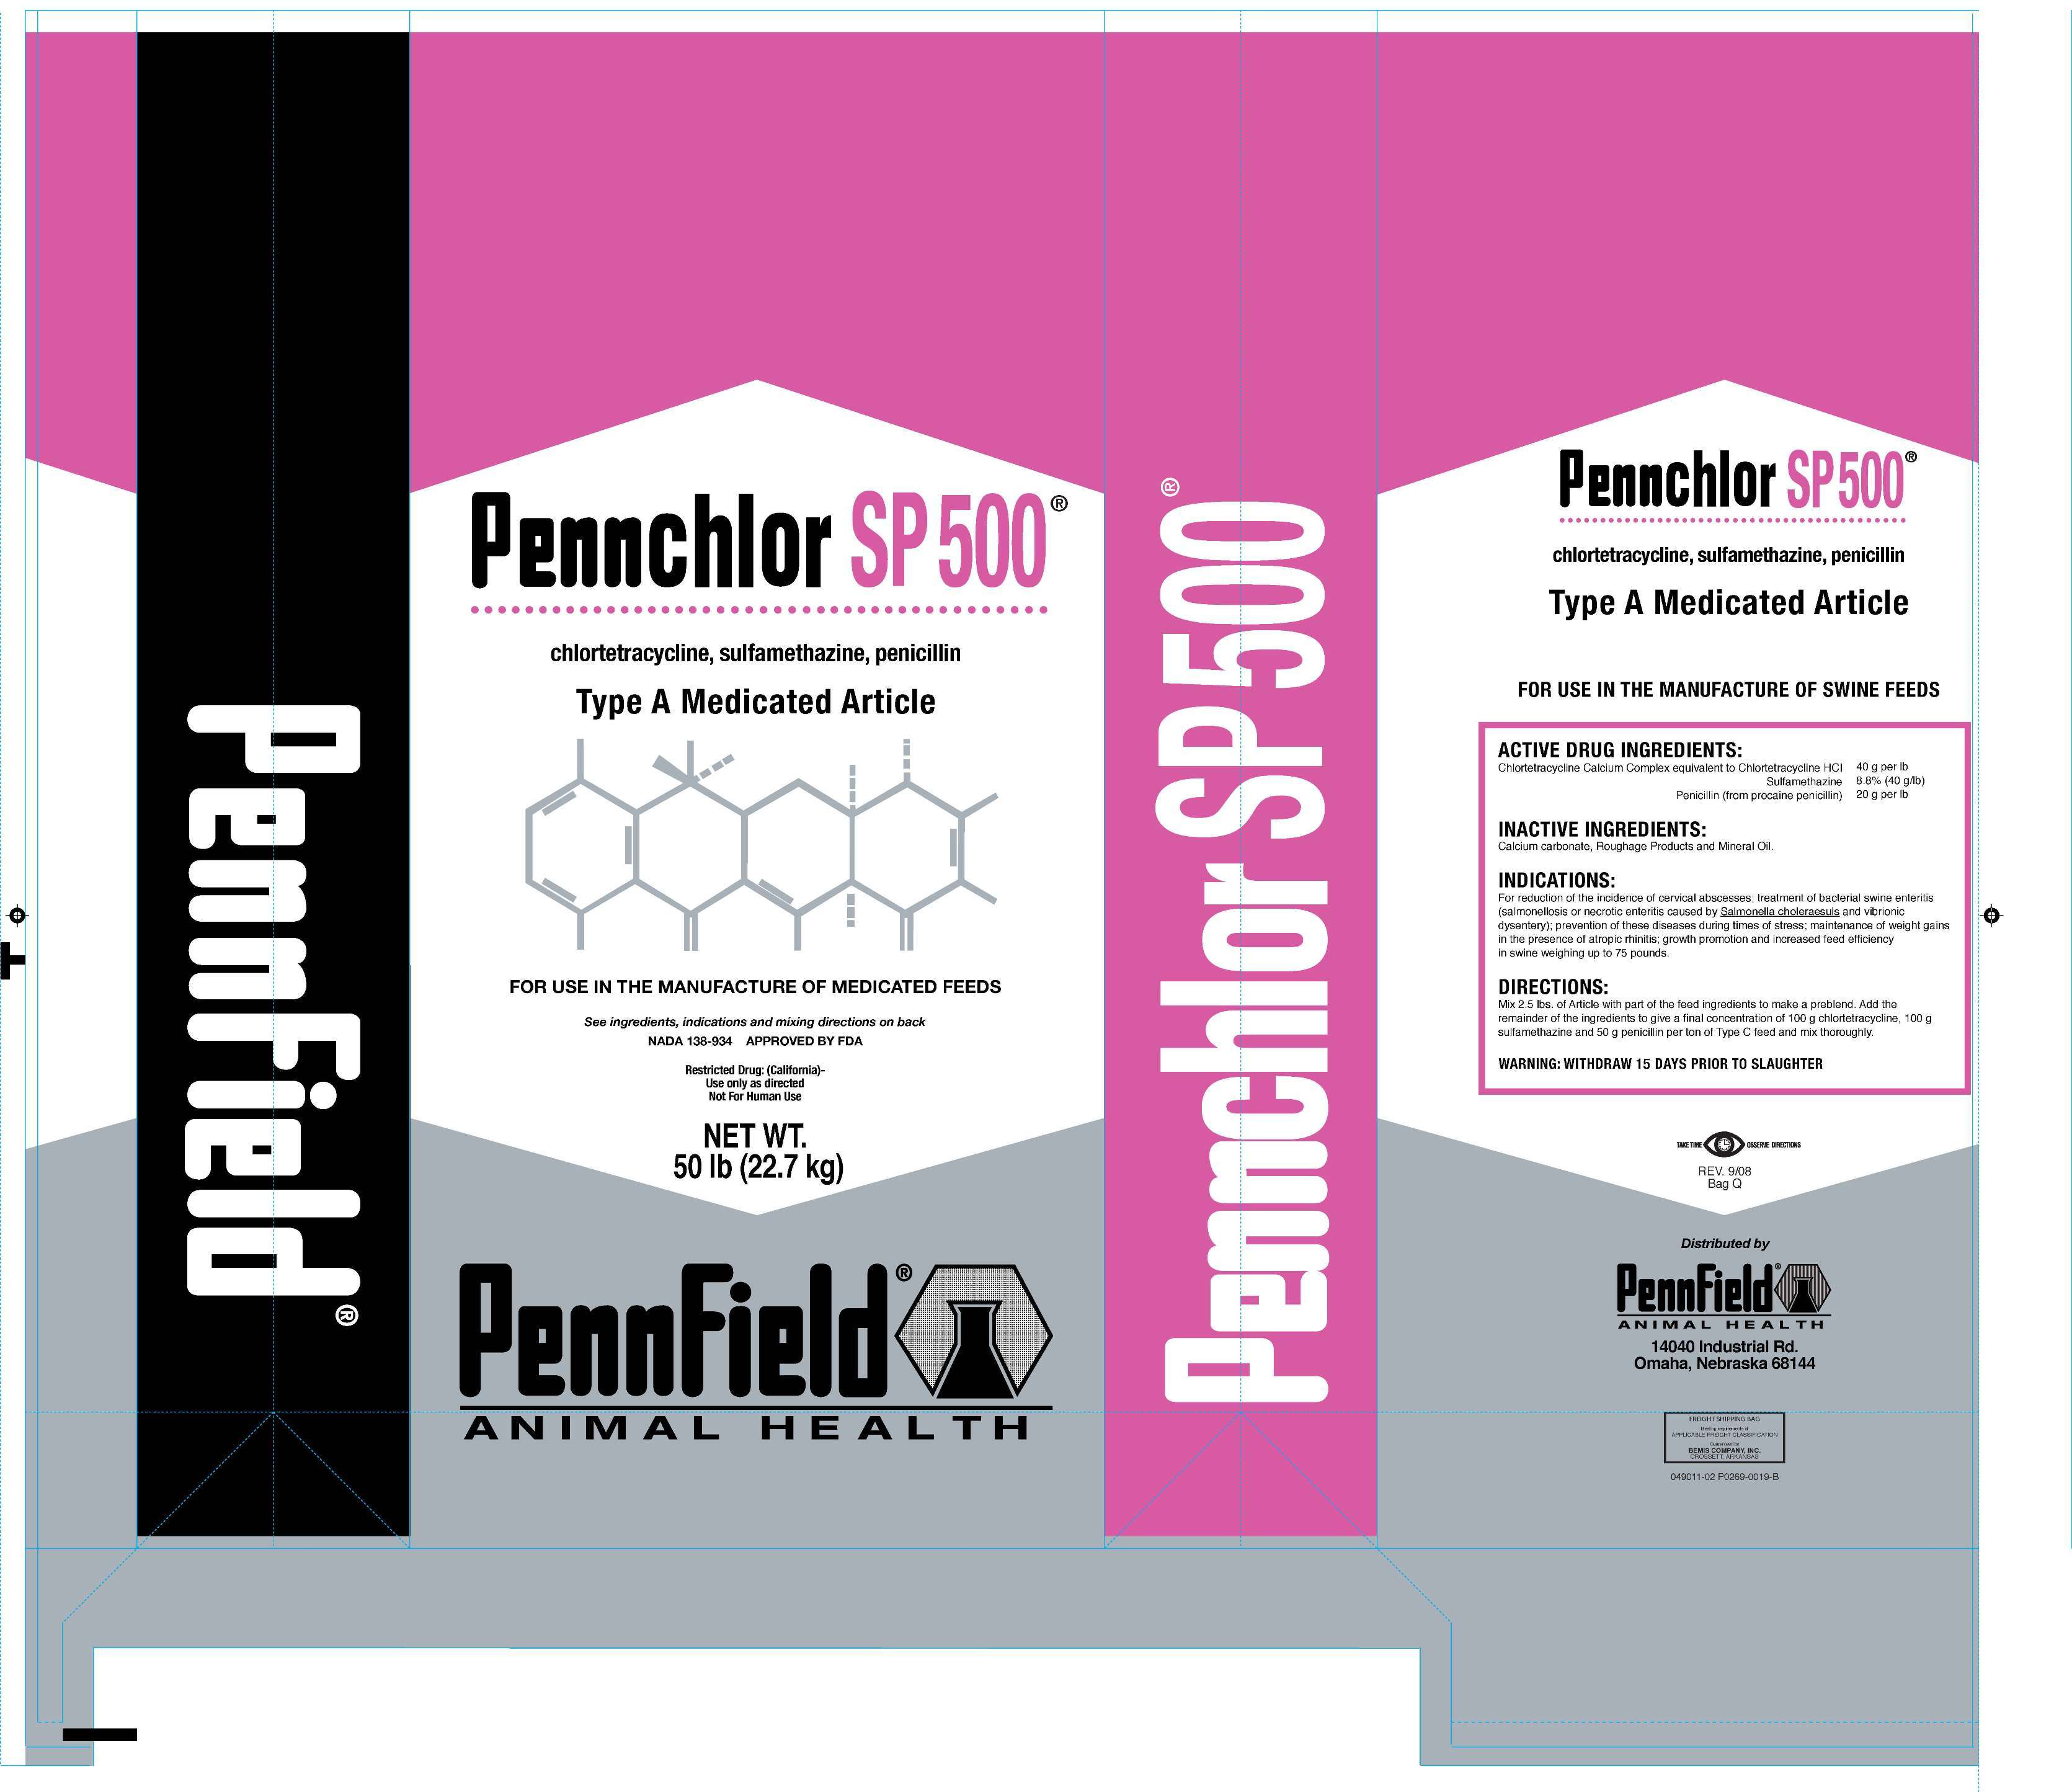 Pennchlor SP 500